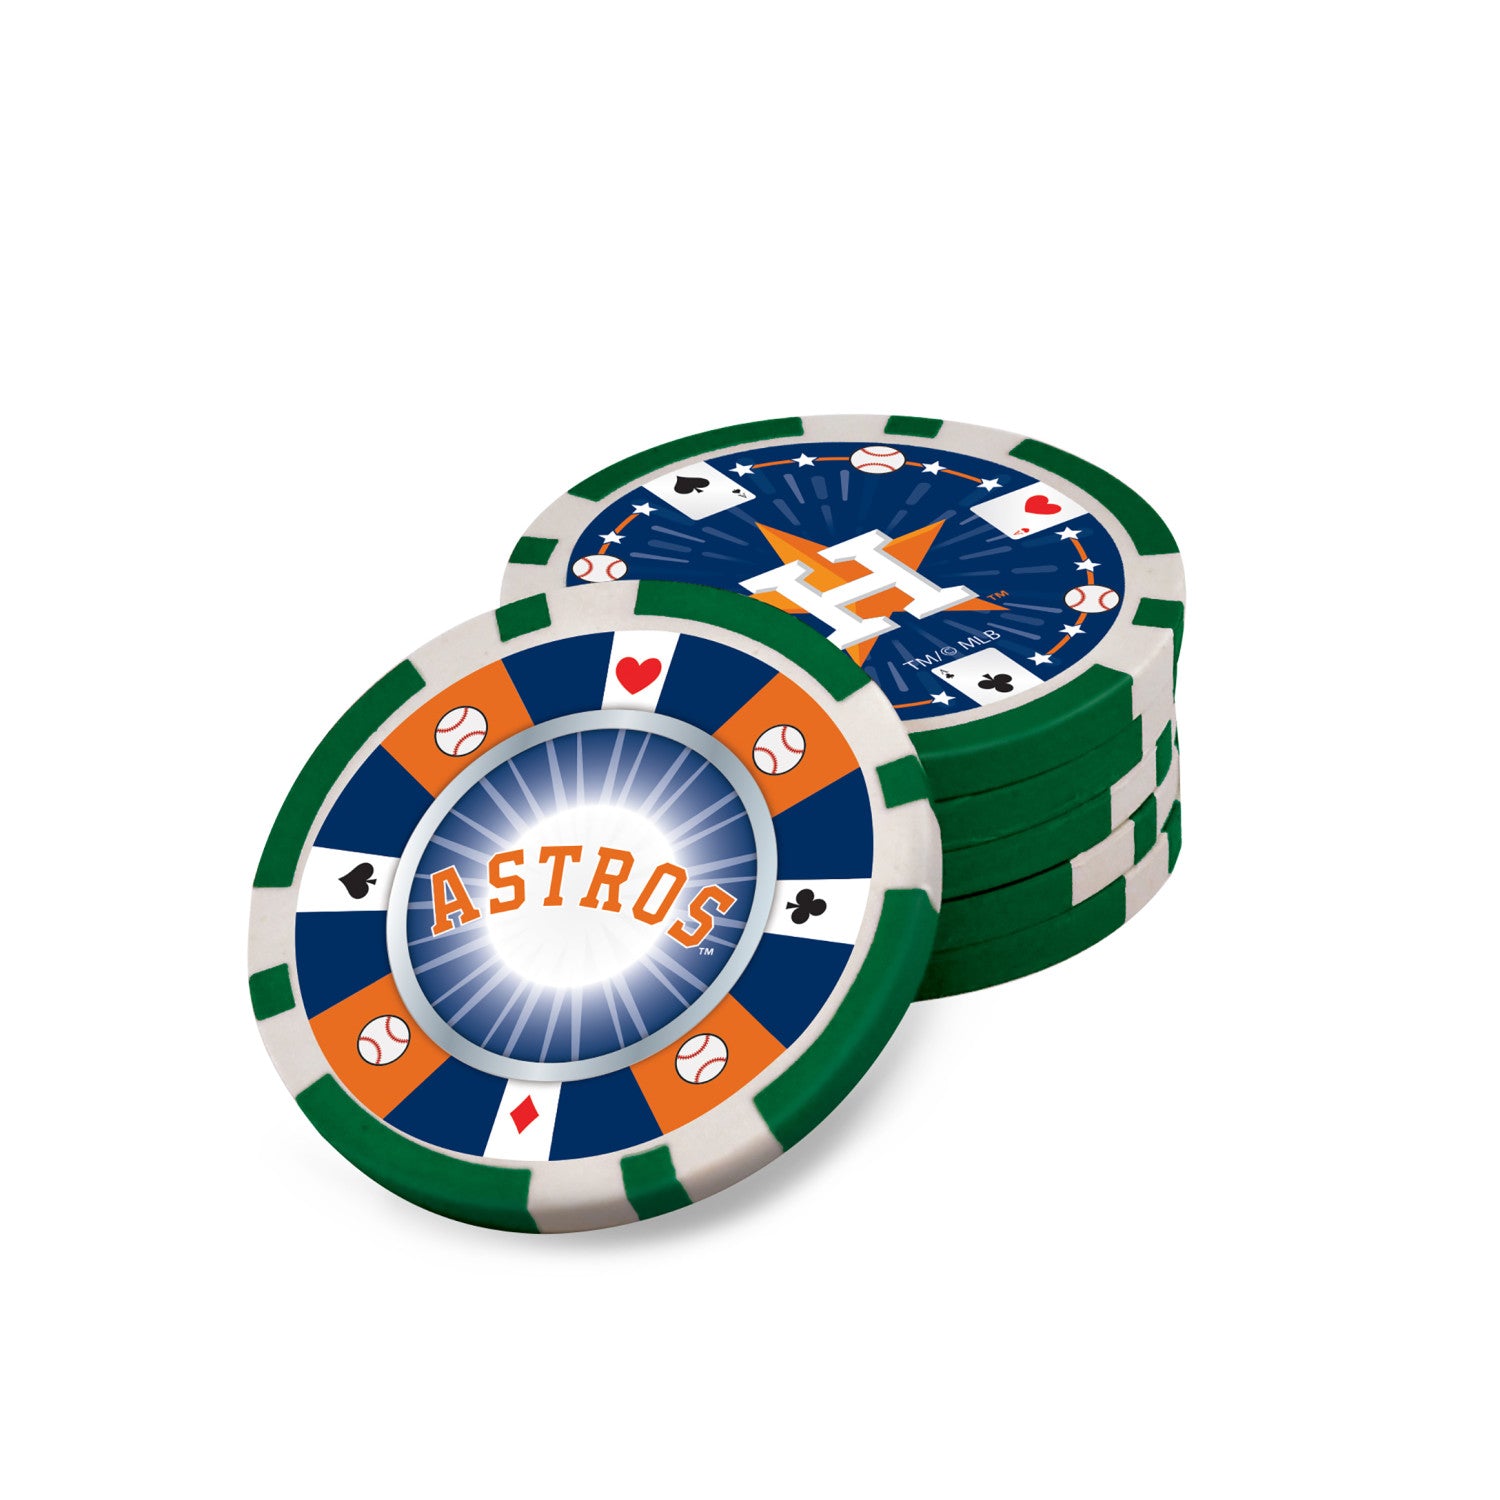 Houston Astros Casino Style 300 Piece Poker Set